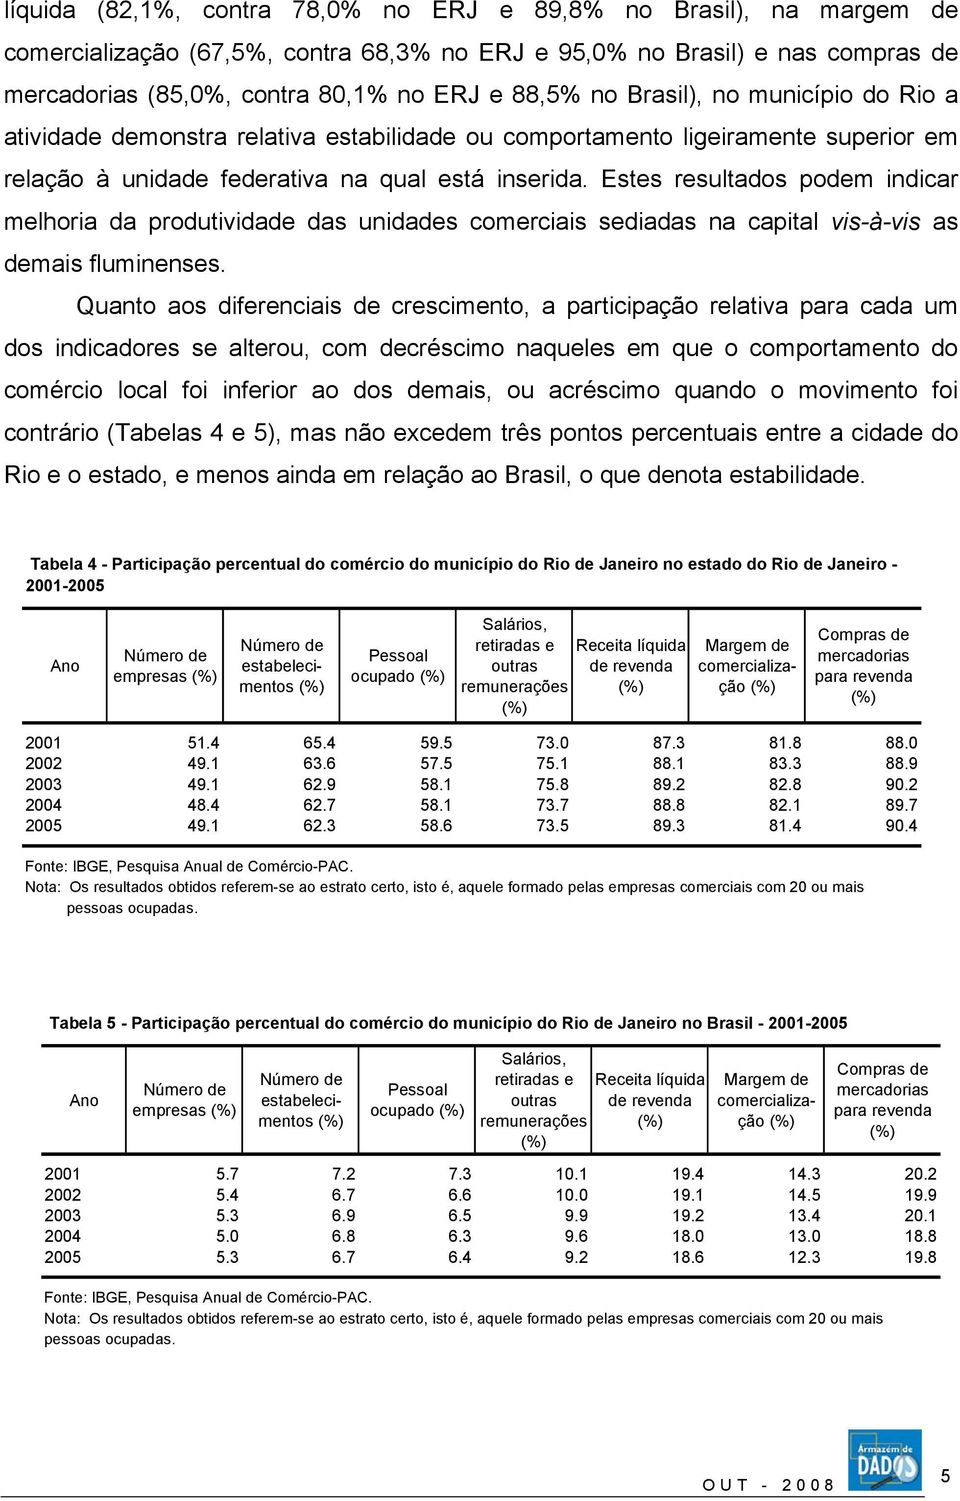 Estes resultados podem indicar melhoria da produtividade das unidades comerciais sediadas na capital vis-à-vis as demais fluminenses.